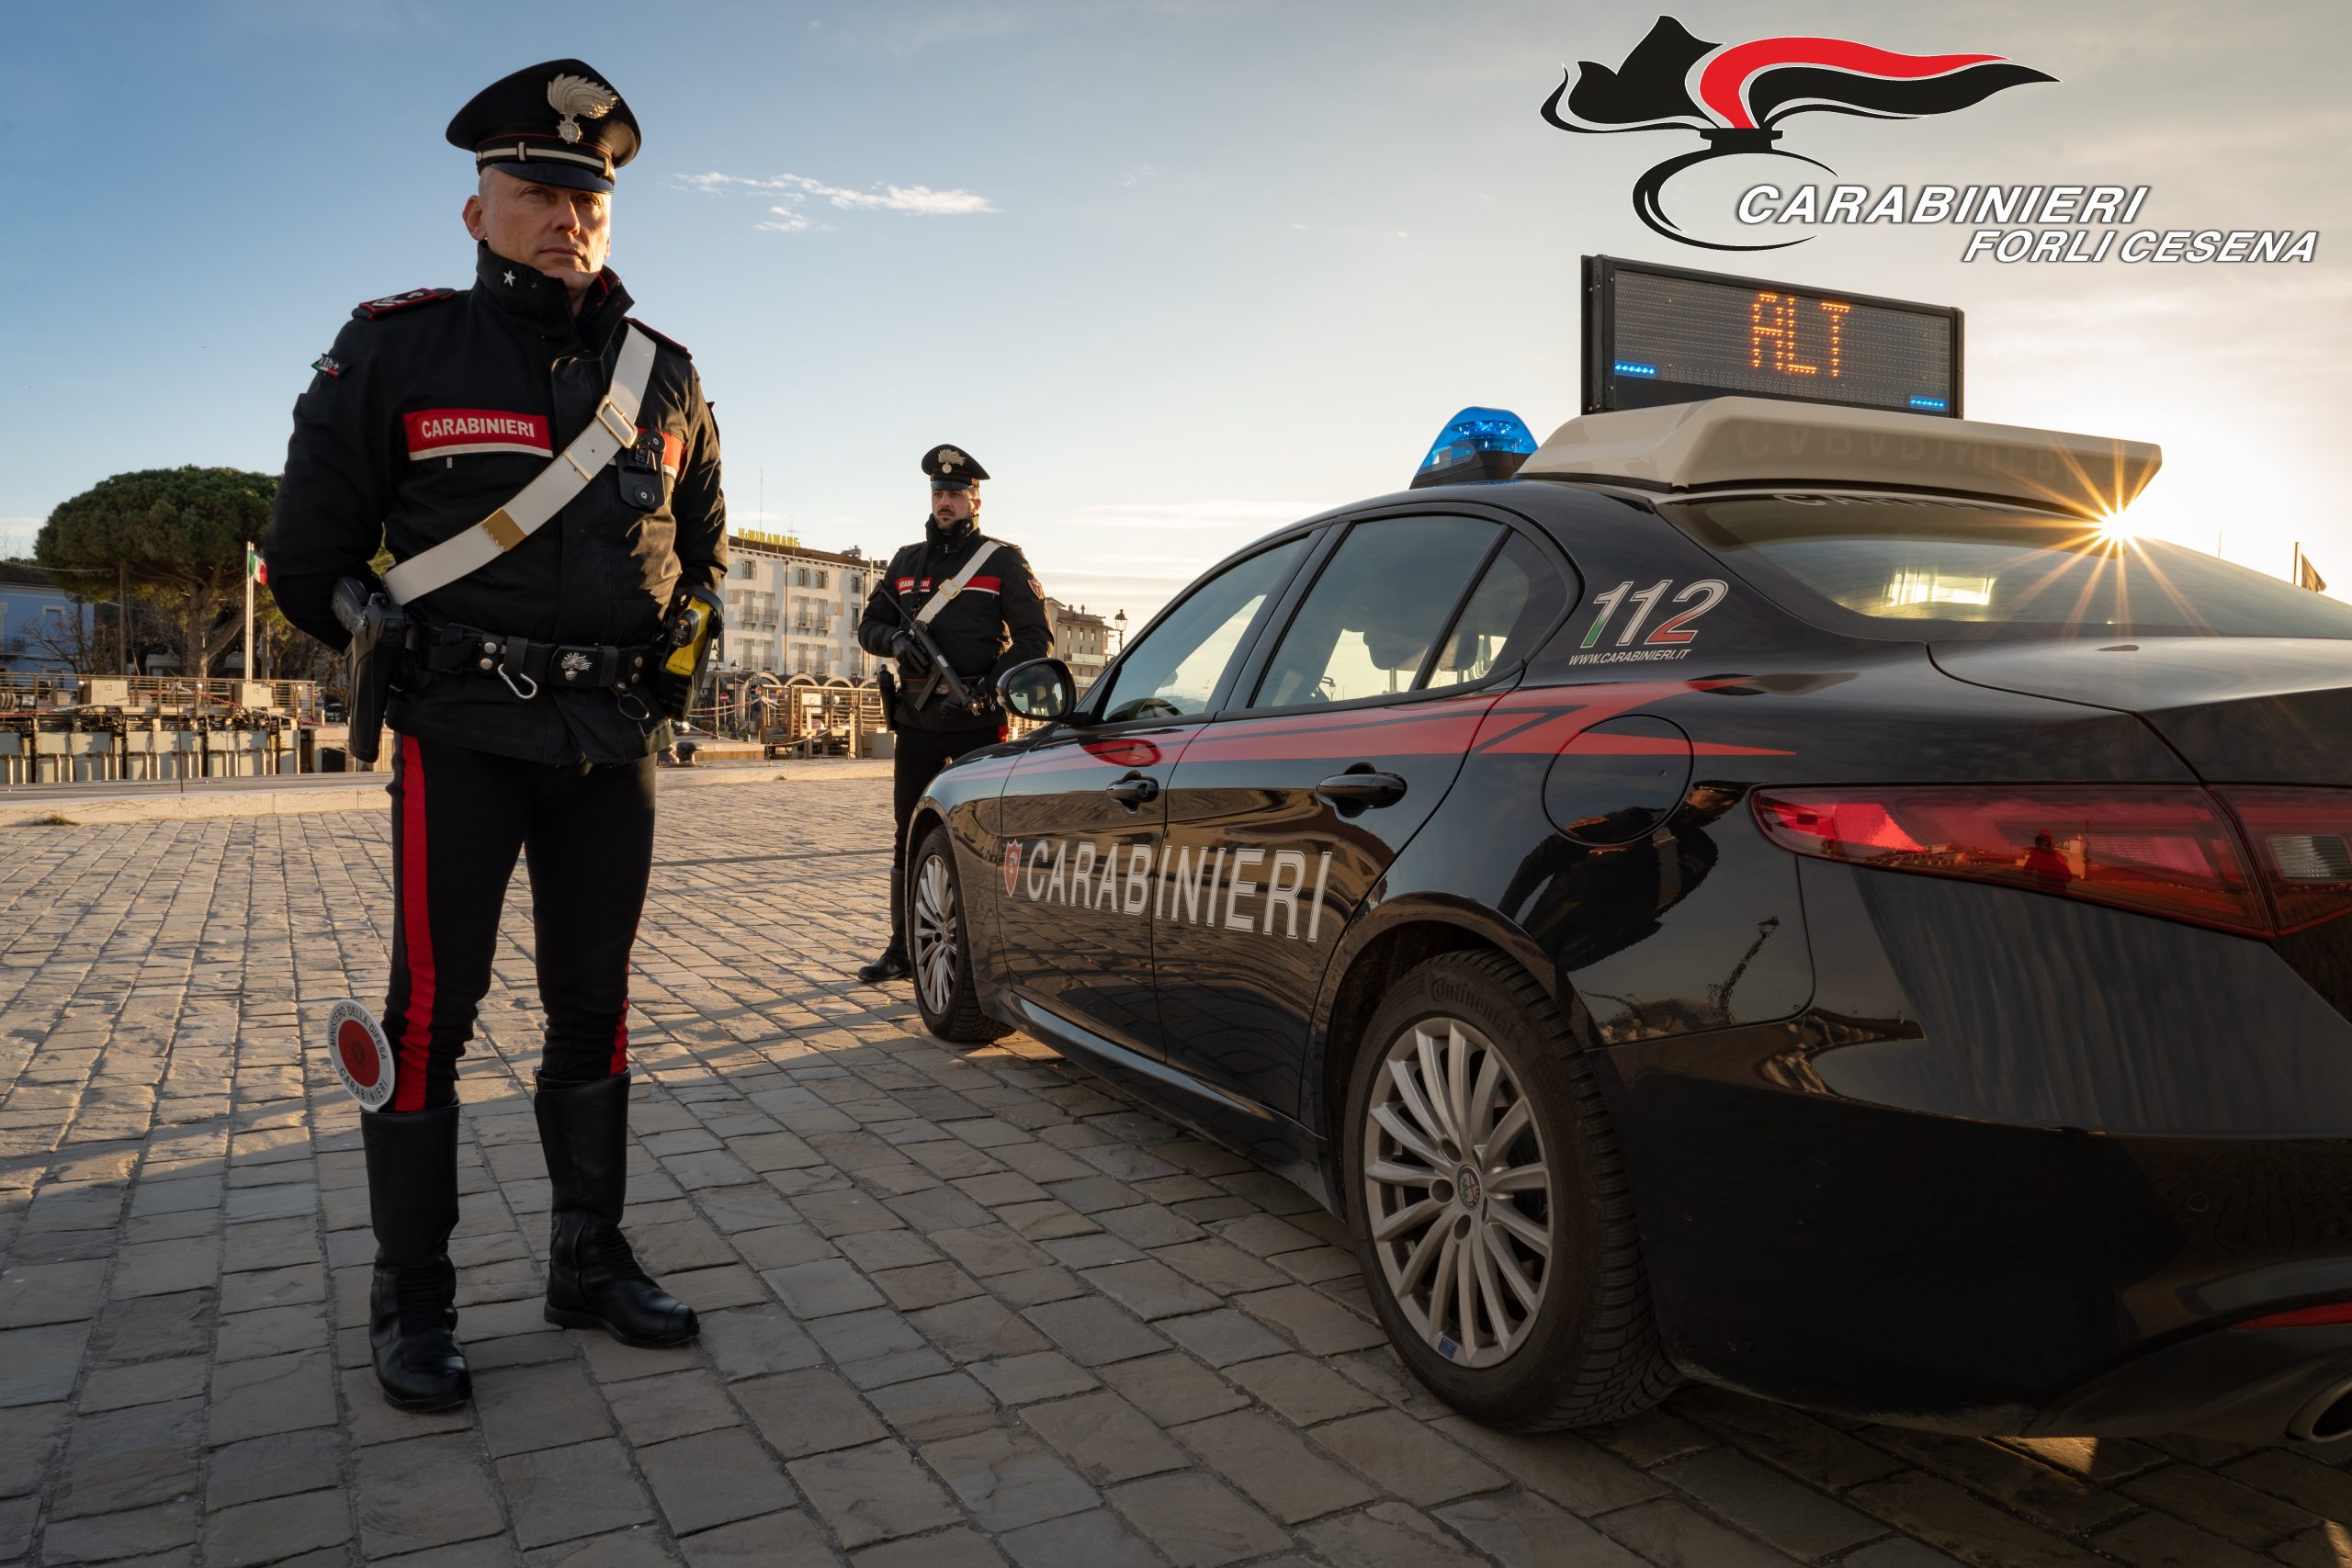 Tenta la fuga 32 enne arrestato dai Carabinieri di Cesenatico